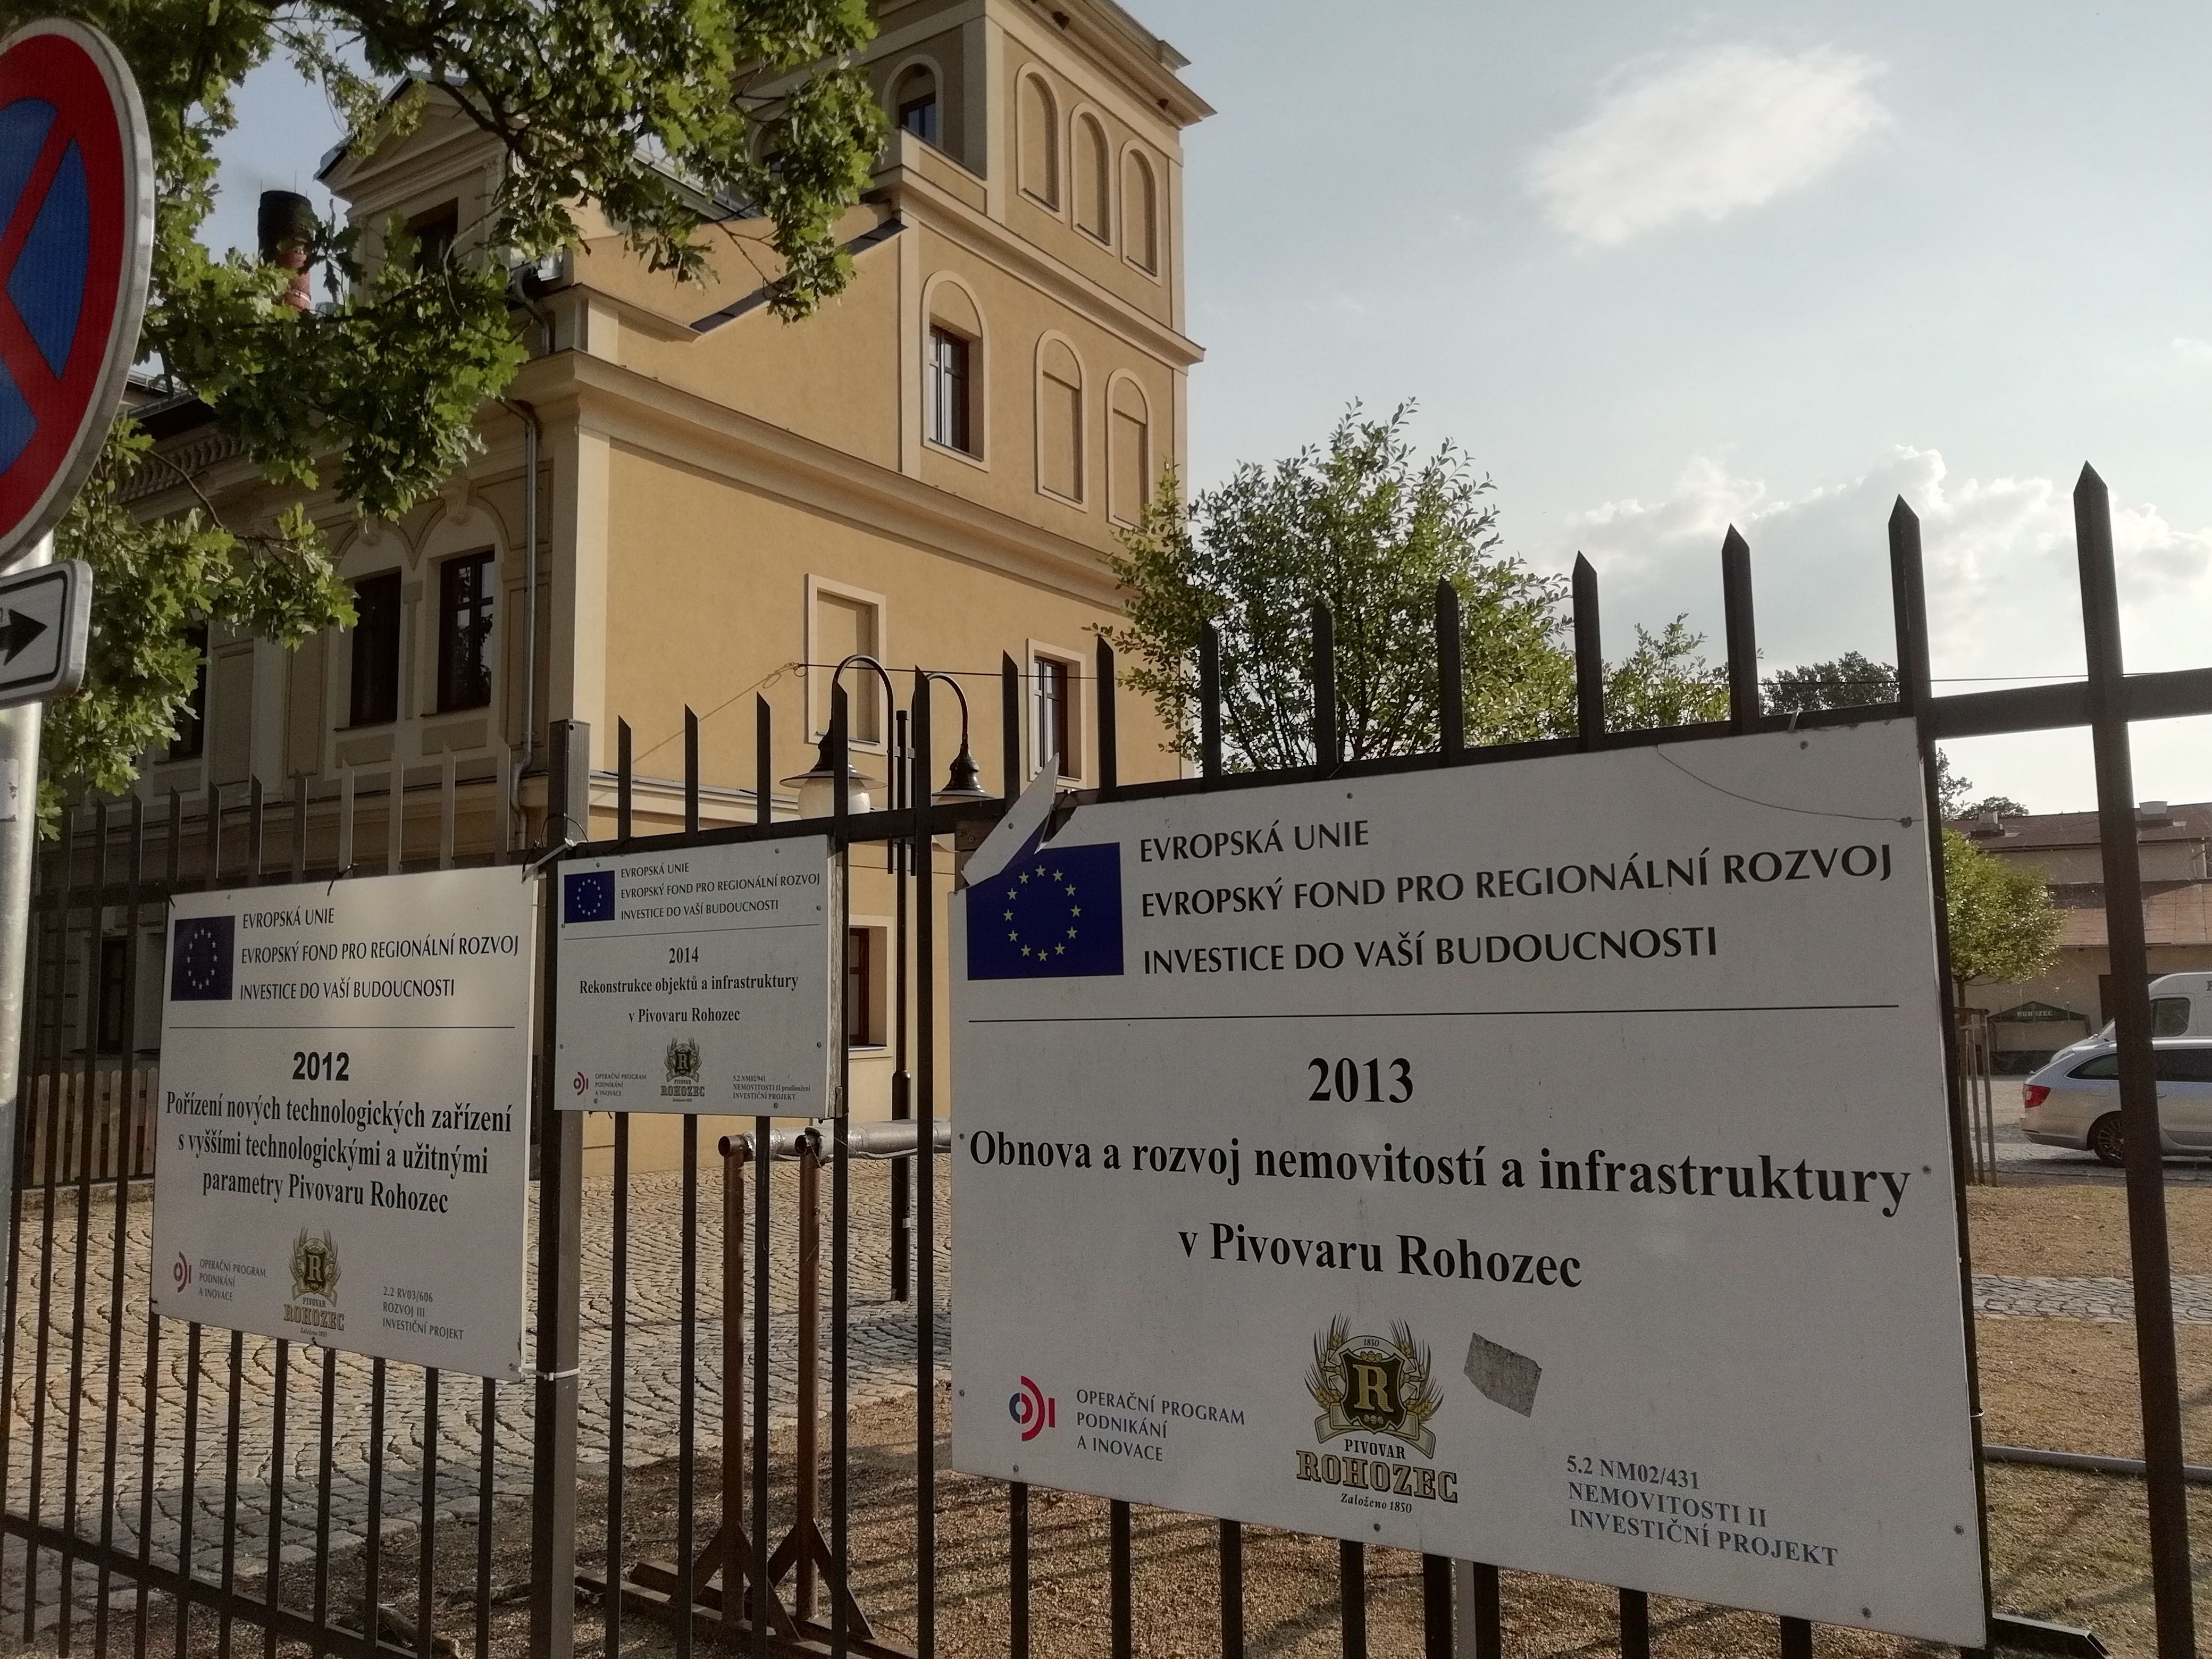 Obnova a rozvoj nemovitostí a infrastruktury v Pivovaru Rohozec